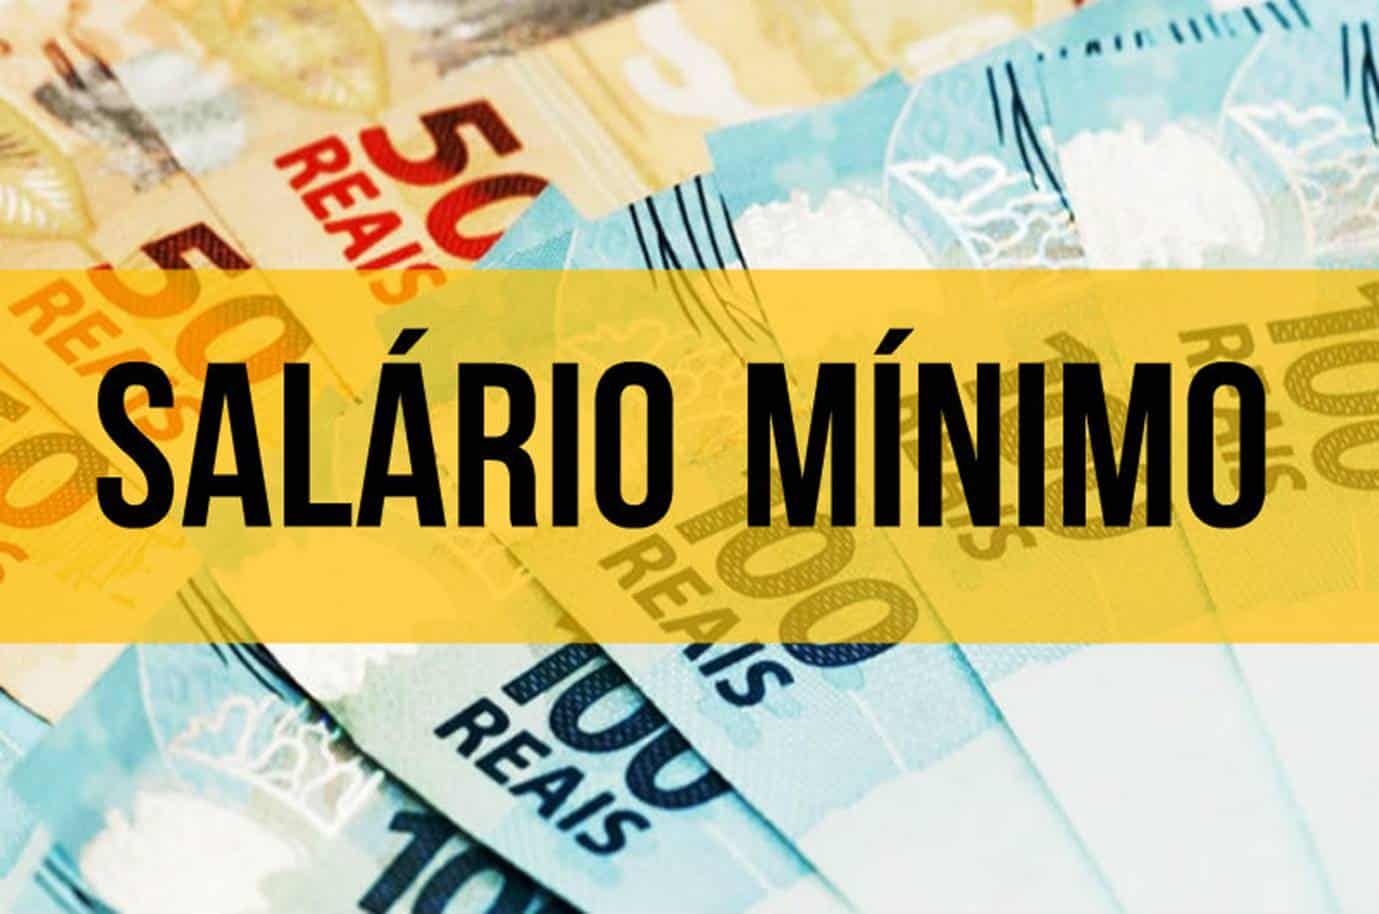 Se ha anunciado un nuevo salario mínimo según el Instituto de Investigaciones Económicas;  Viendo el nuevo valor